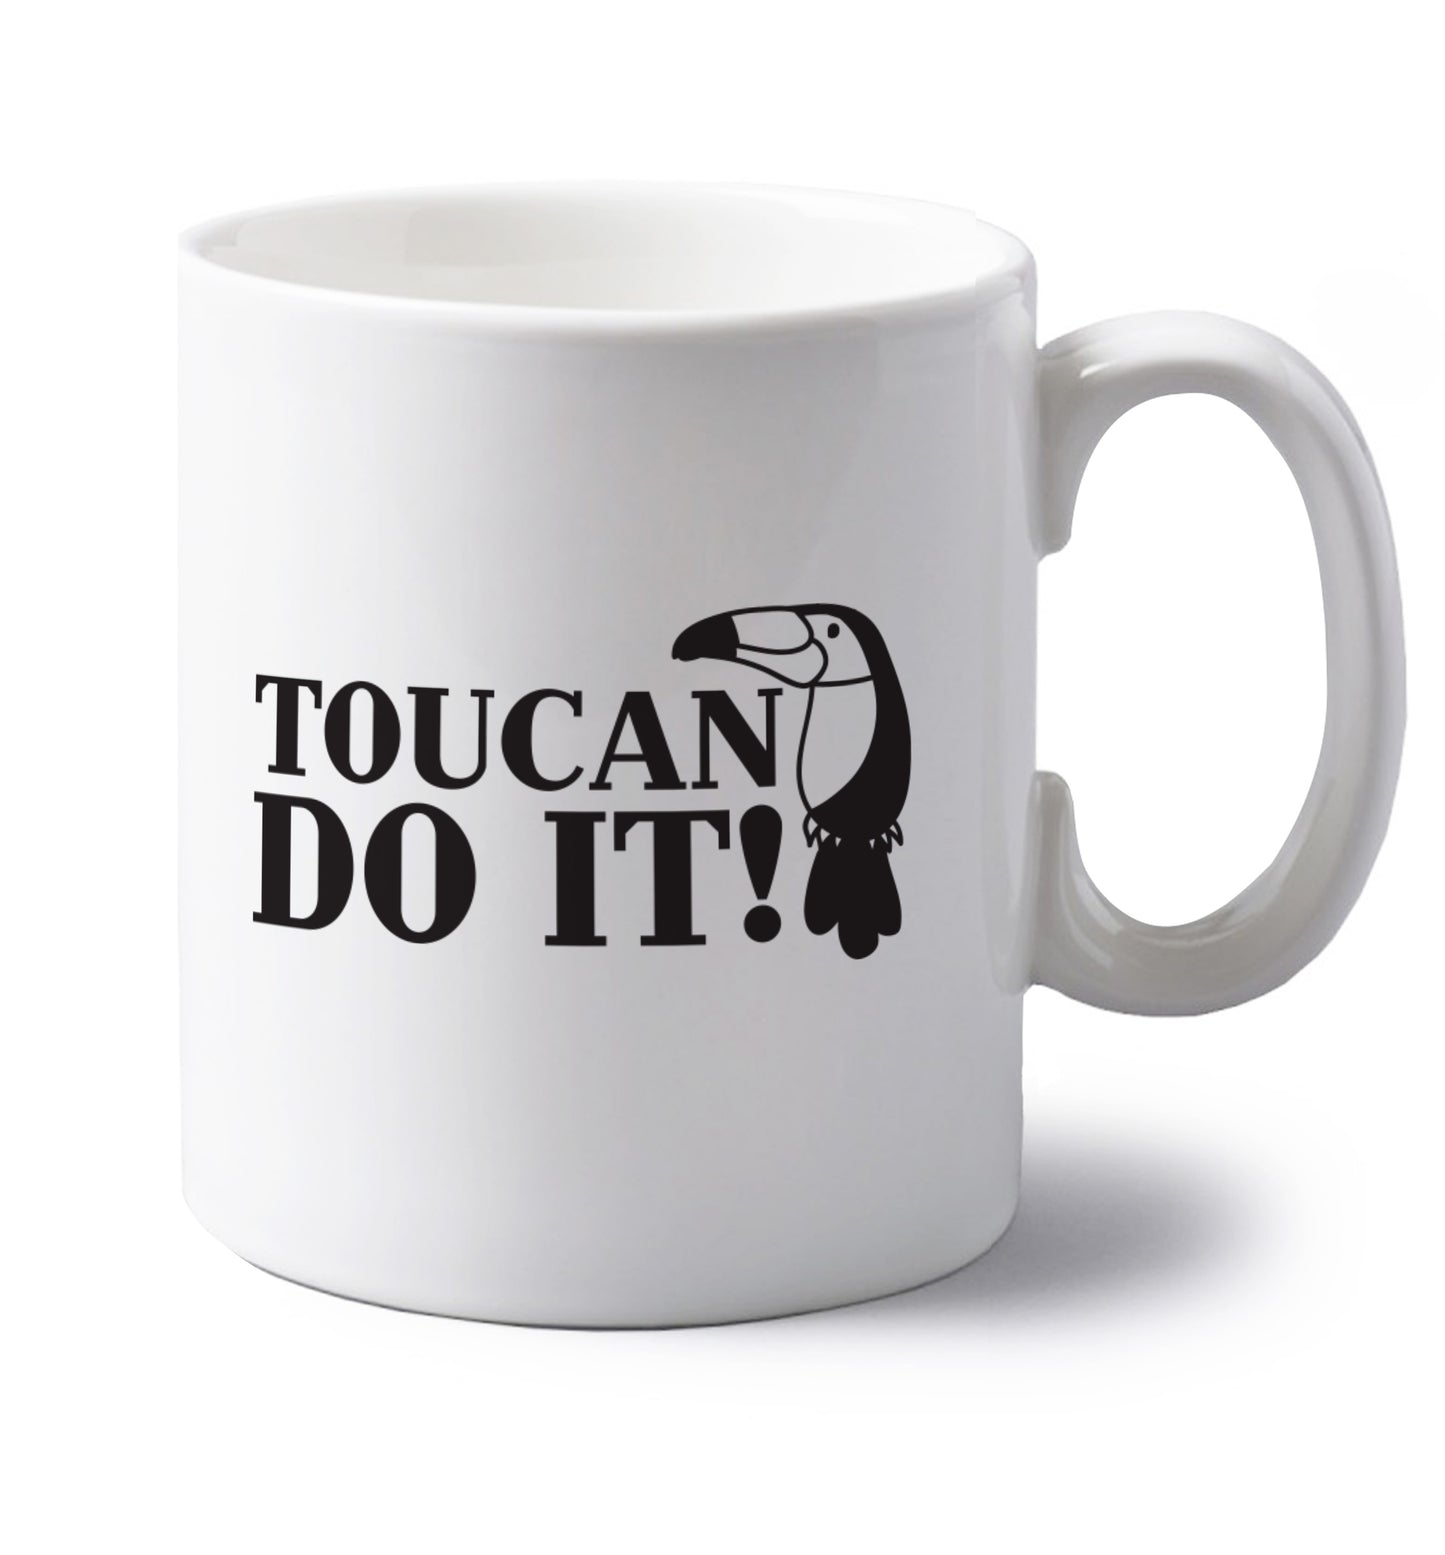 Toucan do it! left handed white ceramic mug 